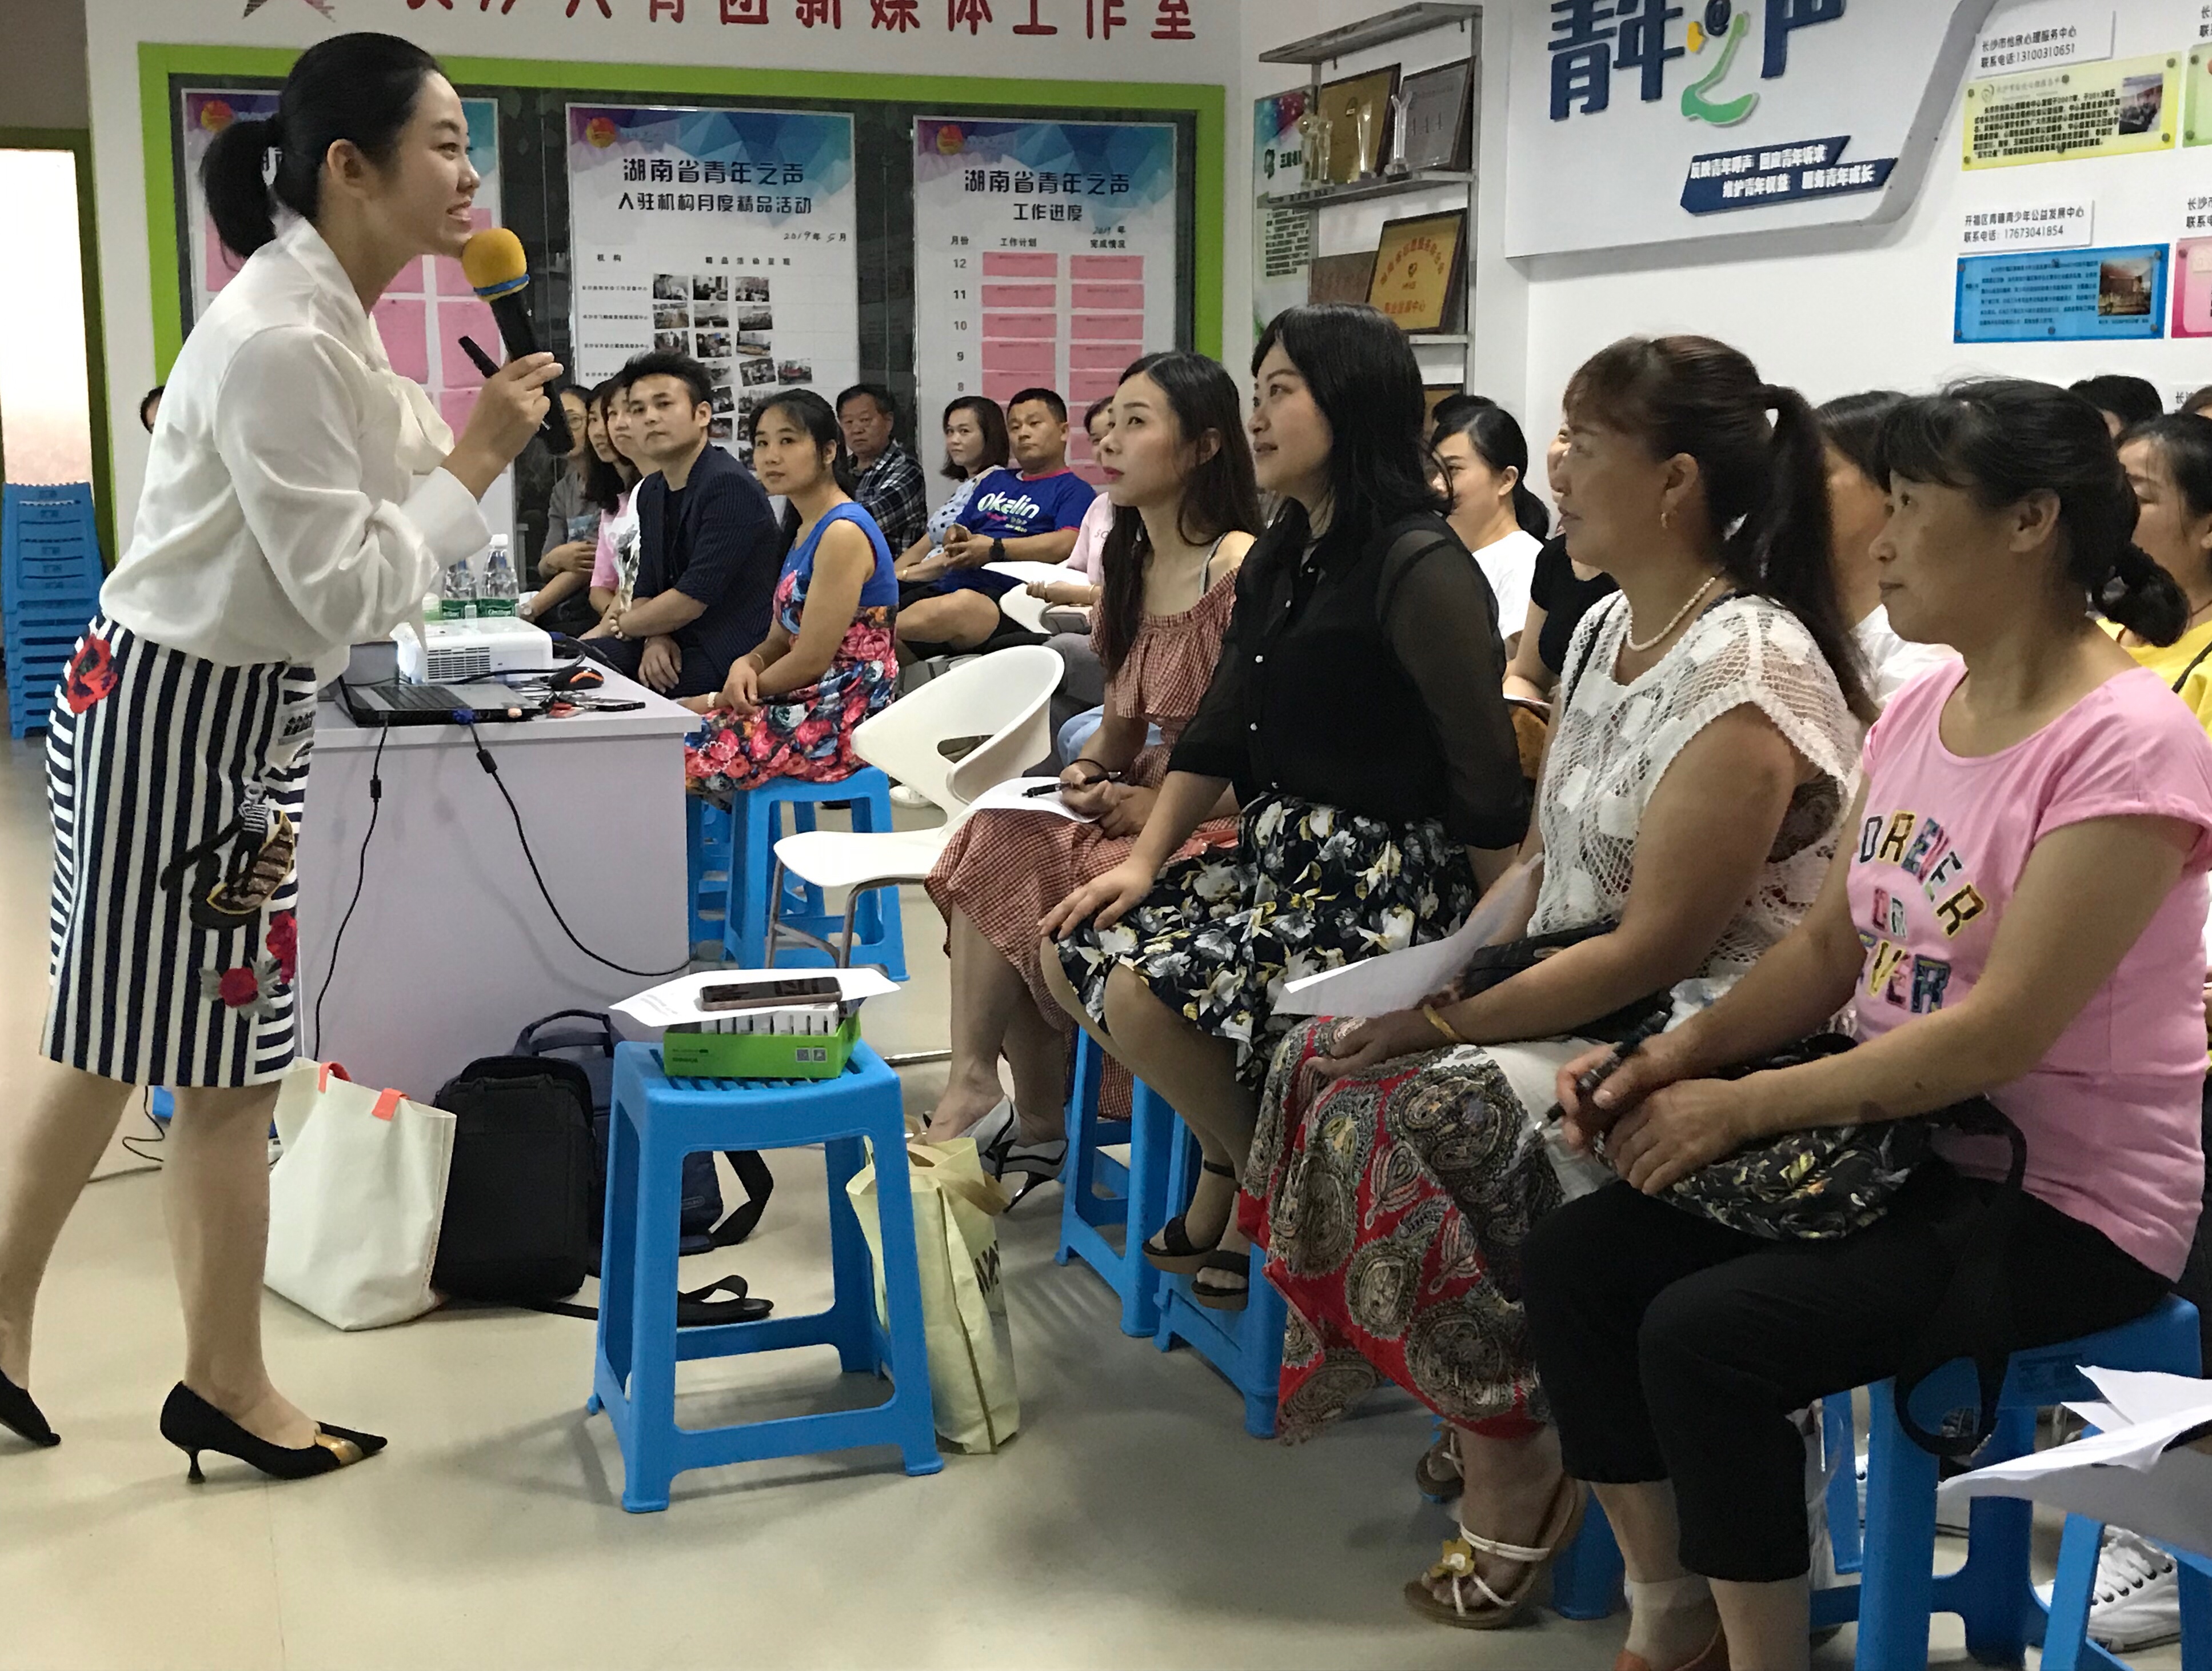 2019年7月13日,7月14日 周末两天,长沙市妇联家庭教育赛课活动的